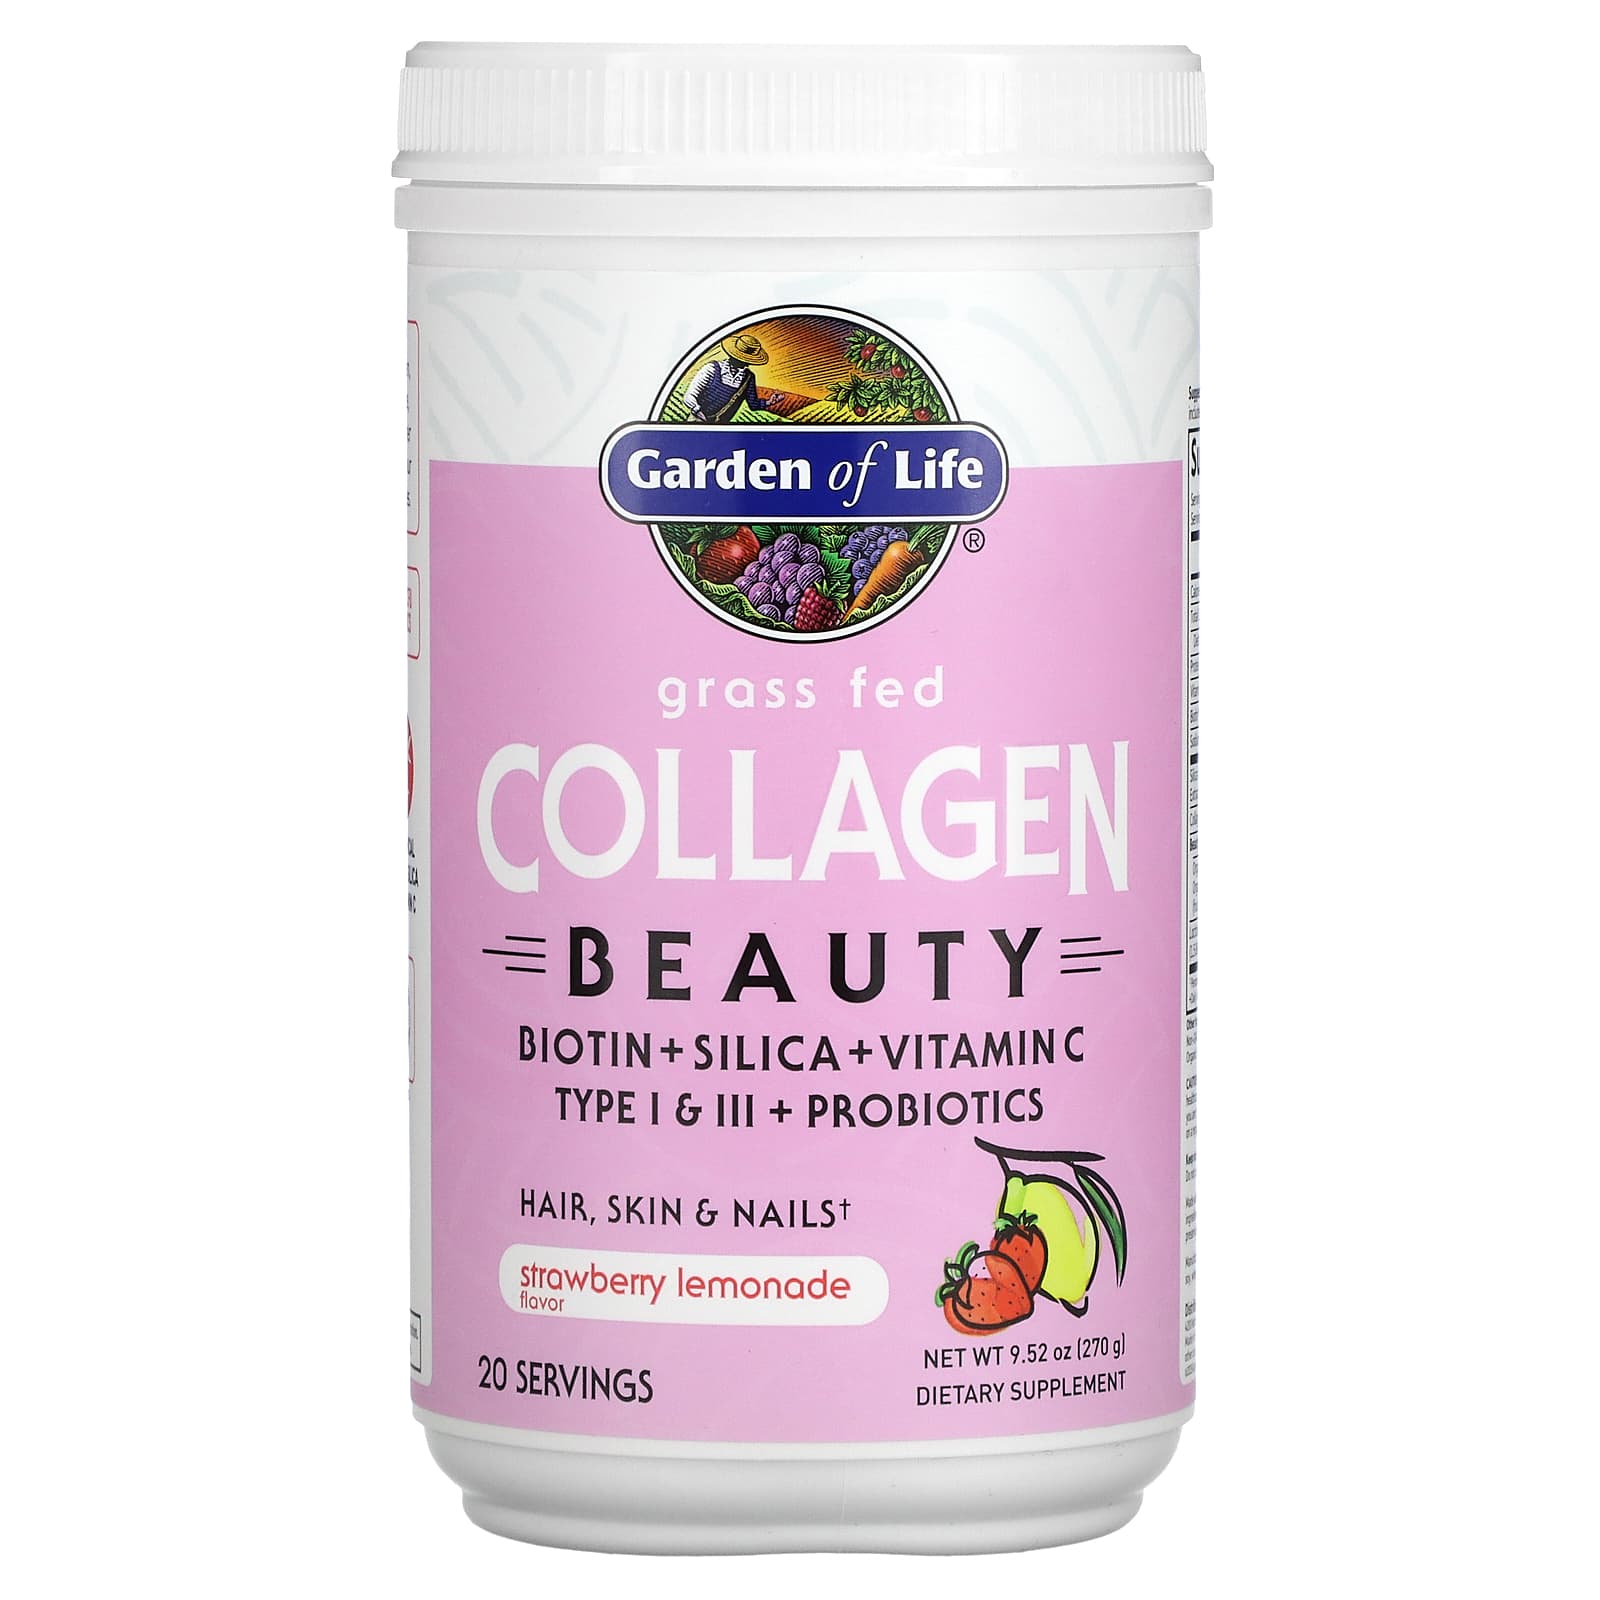 Is Garden of Life Collagen Good 